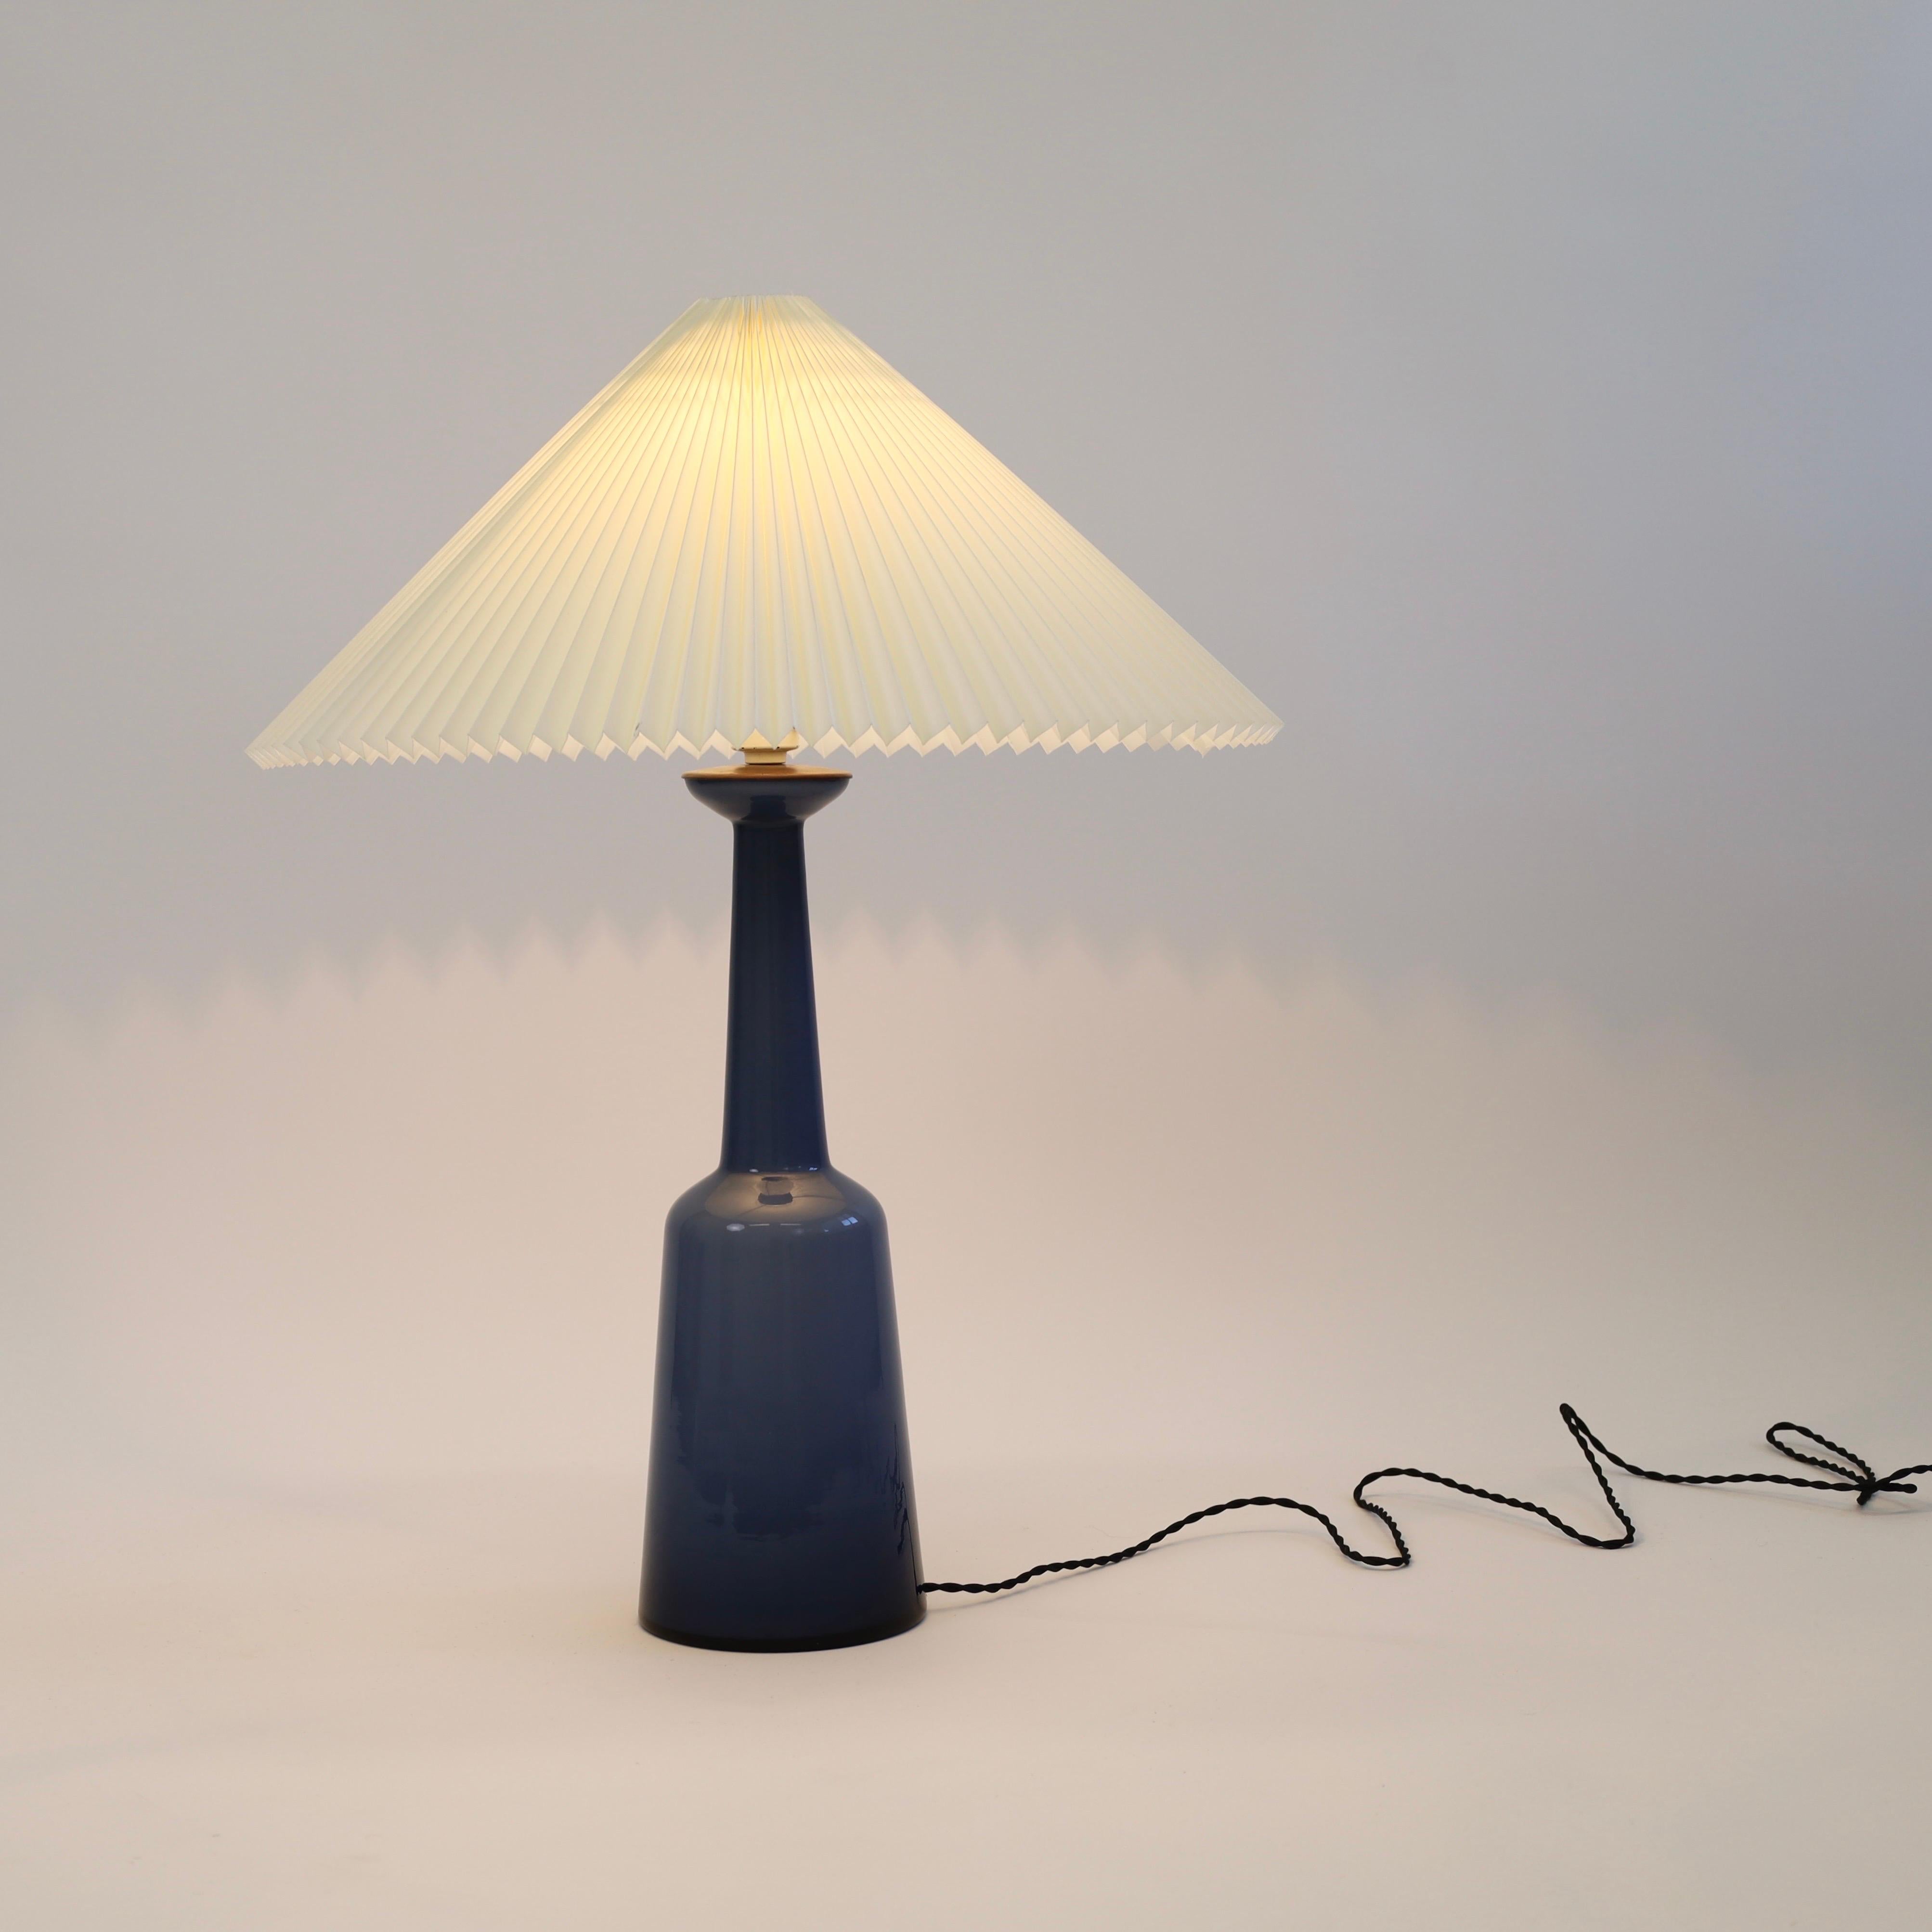 Glass A Danish Modern Table Lamp in blue glass by Kastrup Glasvaerk, 1950s, Denmark For Sale